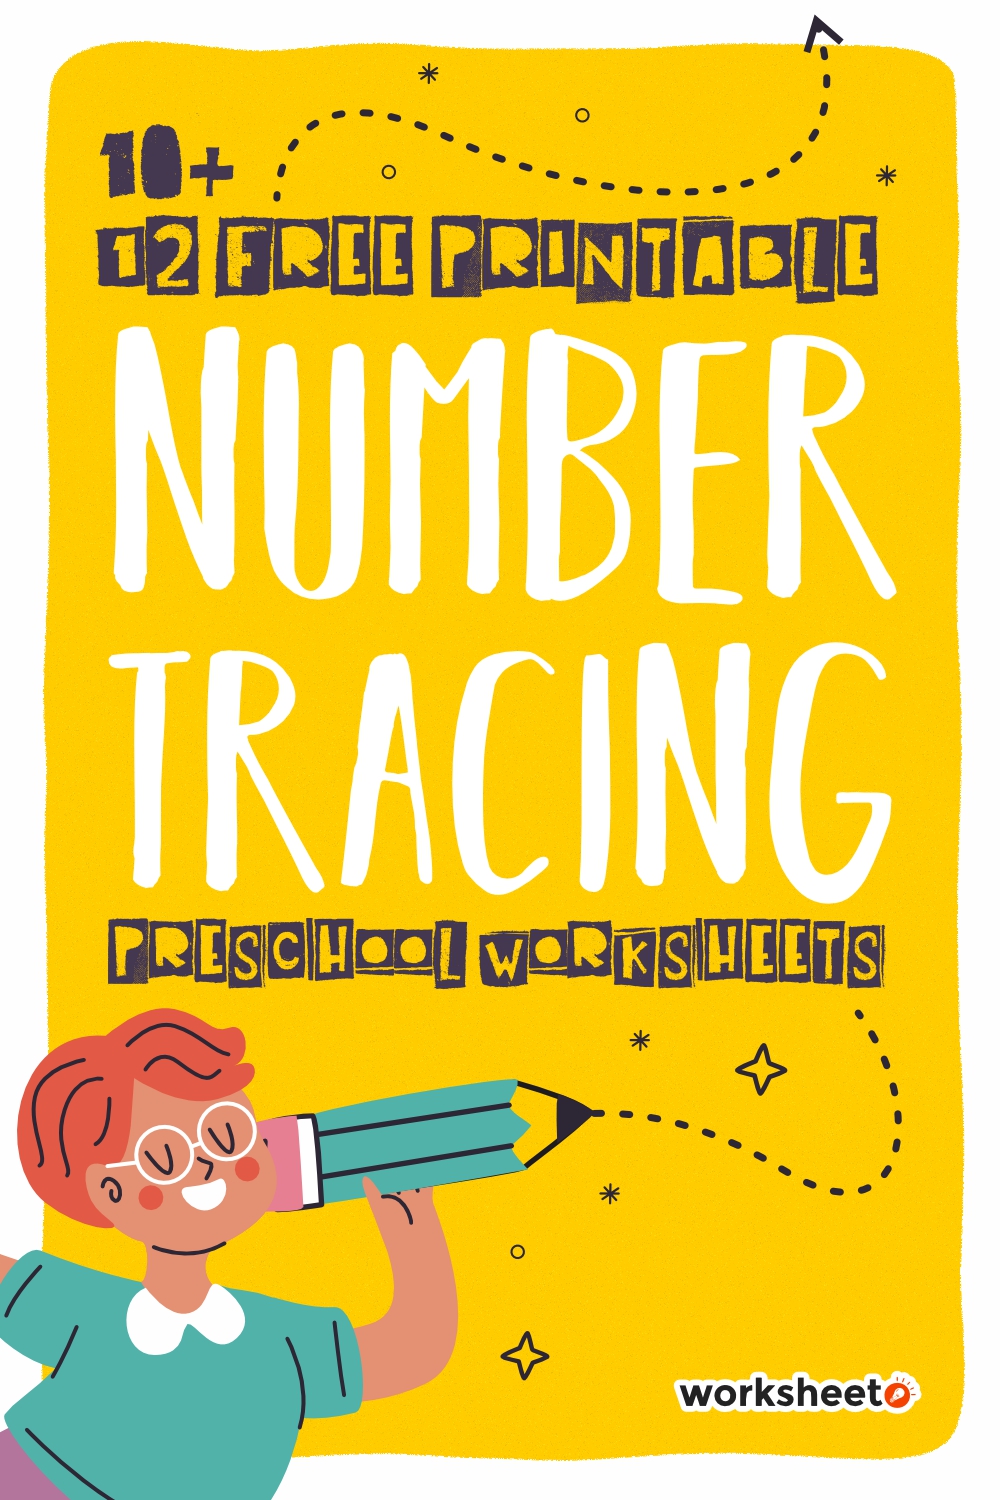 12 12 Free Printable Number Tracing Preschool Worksheets Worksheeto